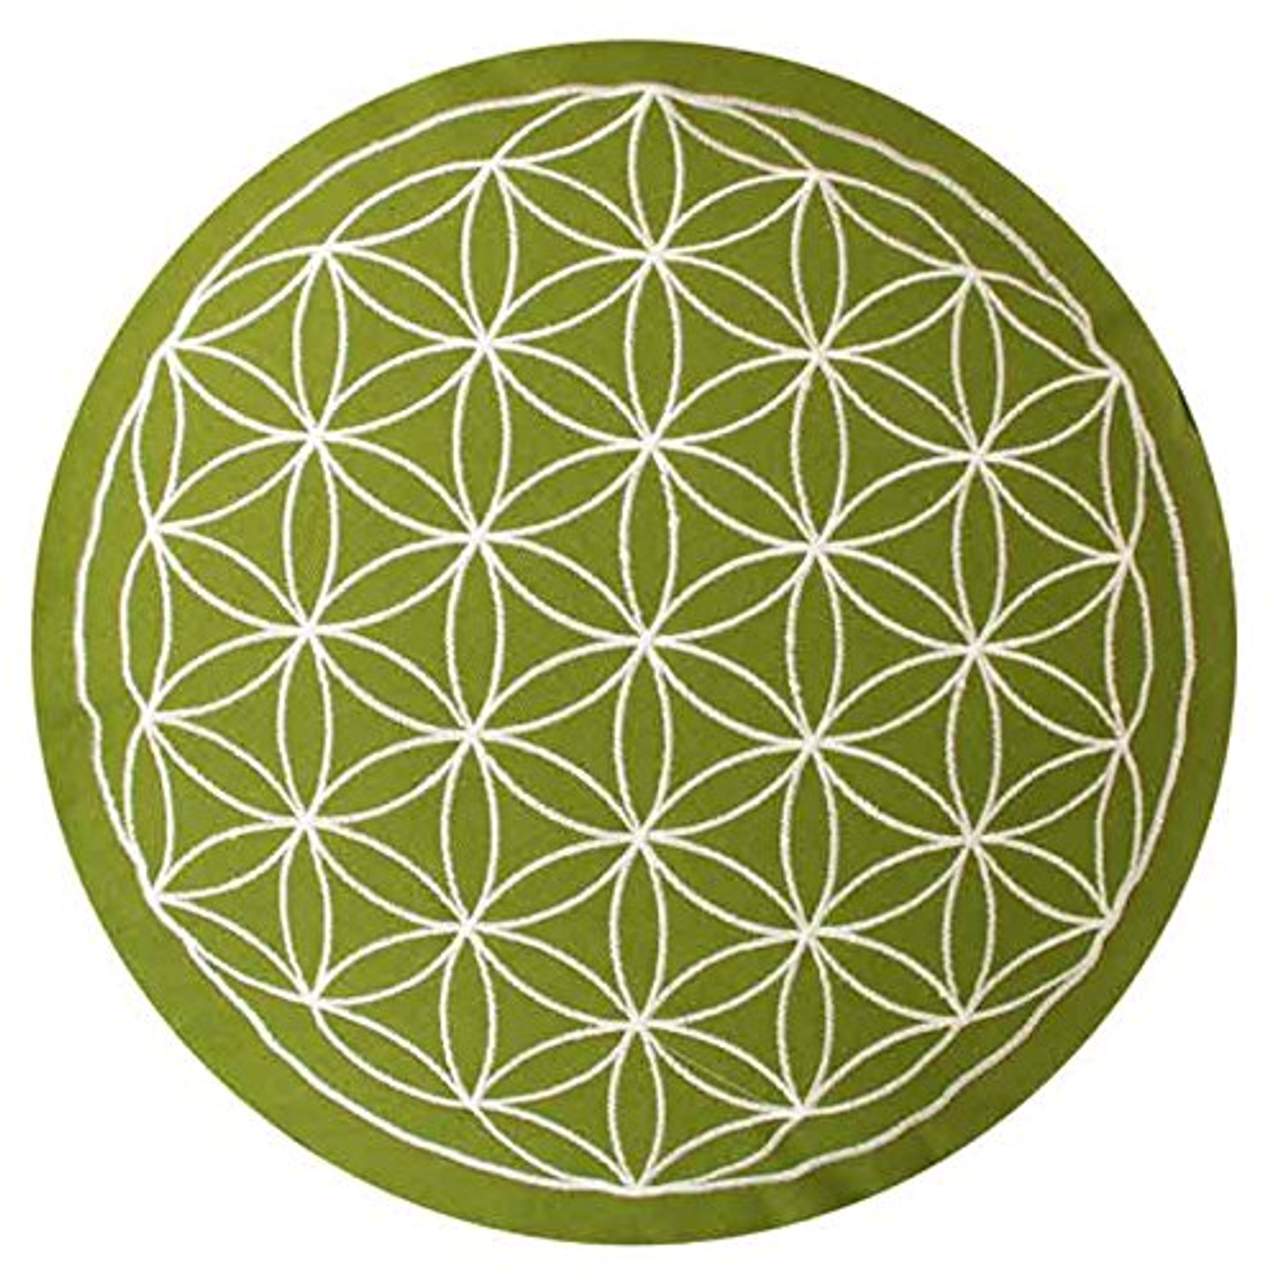 maylow Yoga mit Herz Yogakissen Meditationskissen mit Stickerei Blume des Lebens